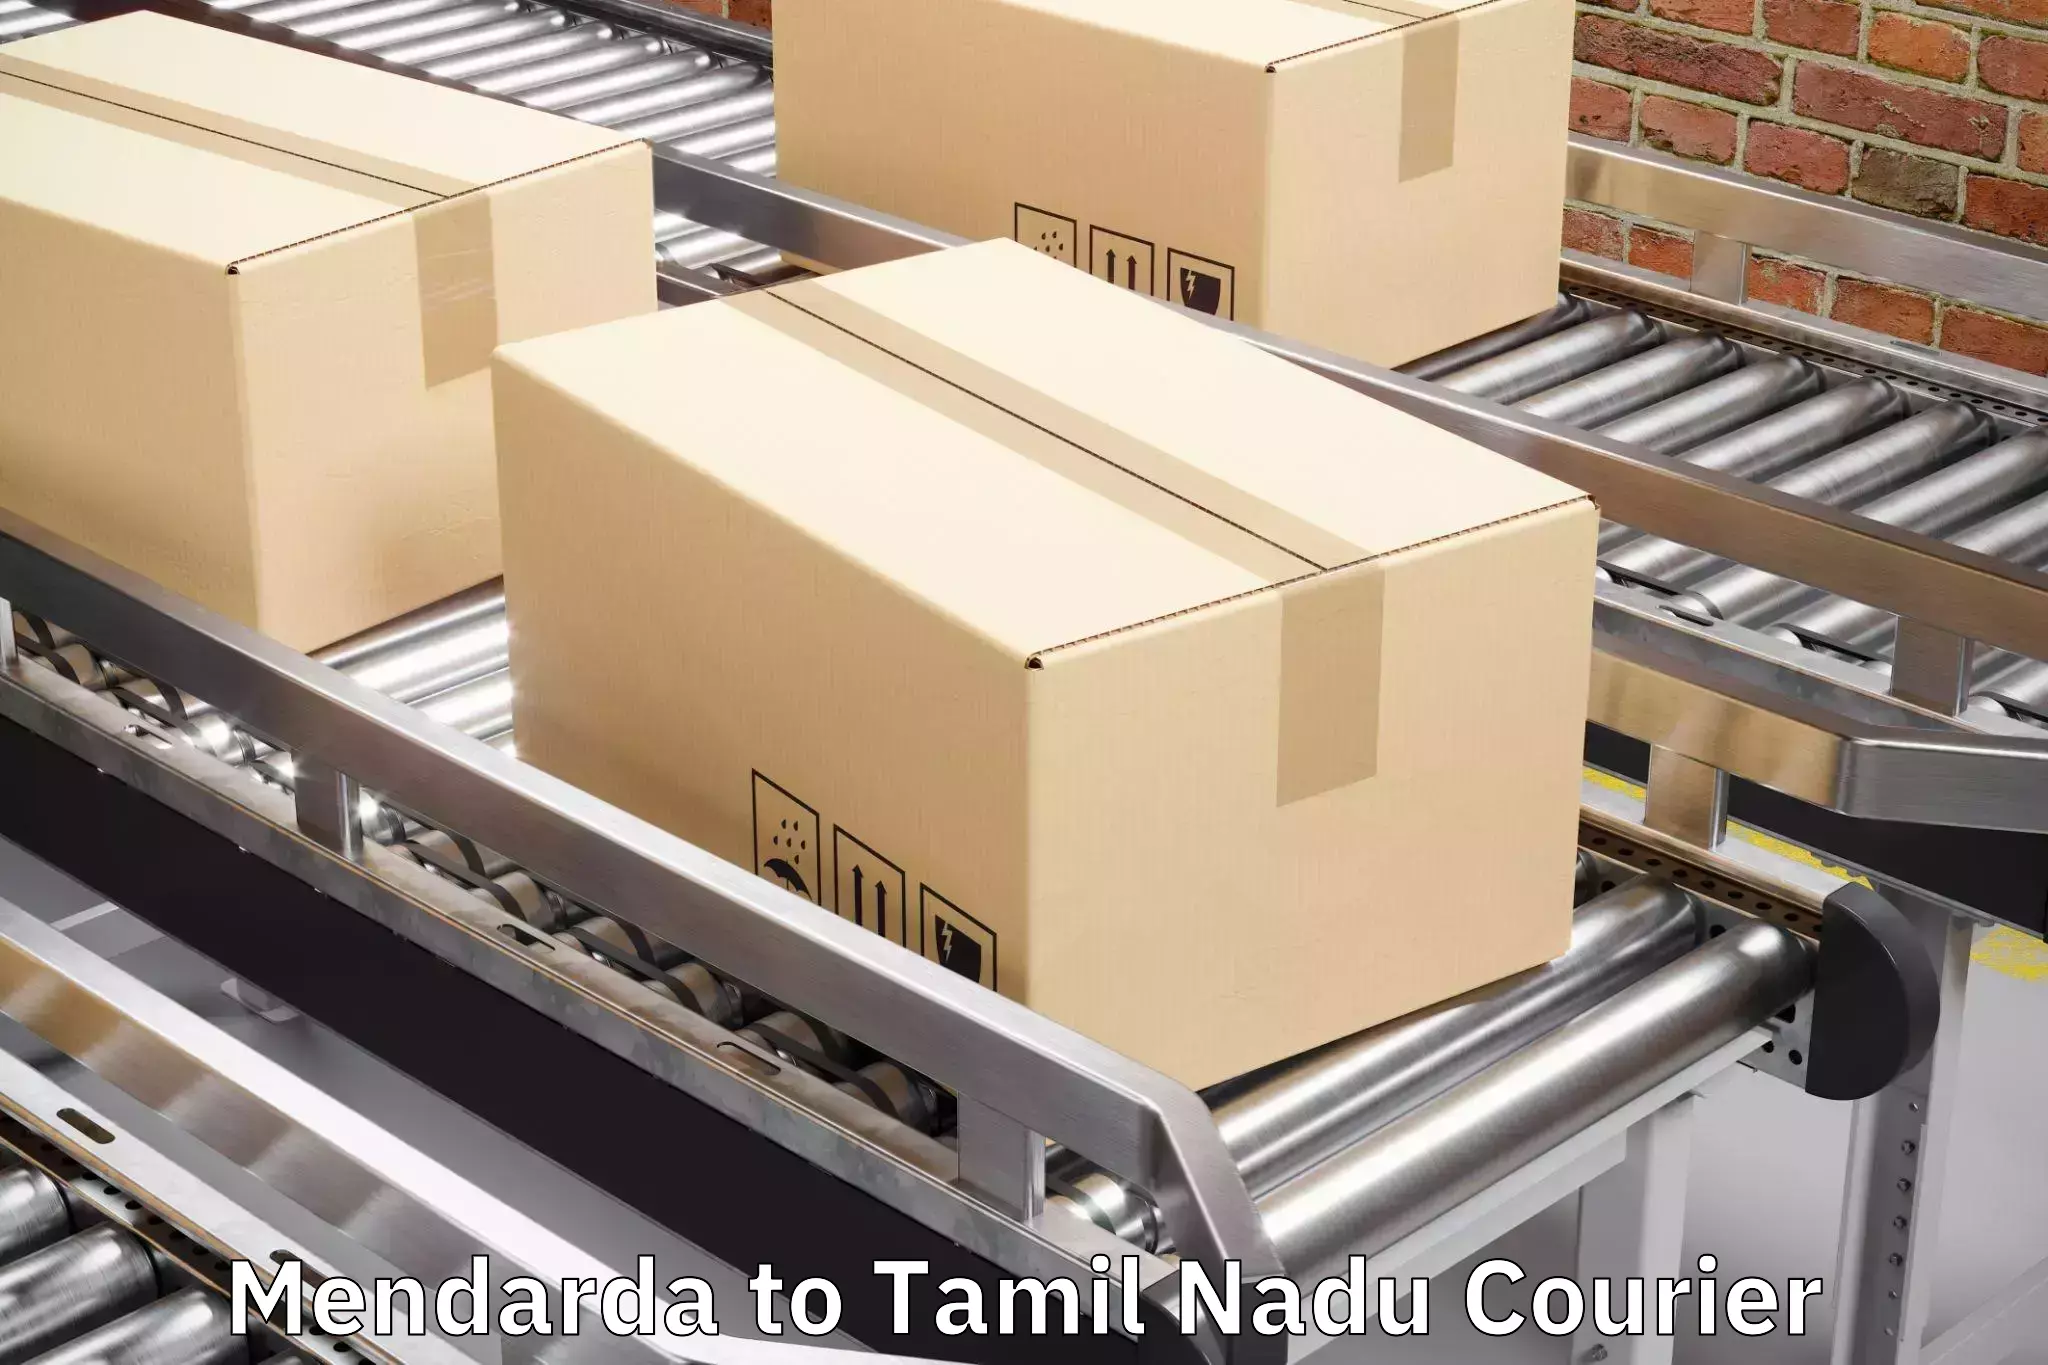 Luggage delivery logistics Mendarda to Tirukalukundram